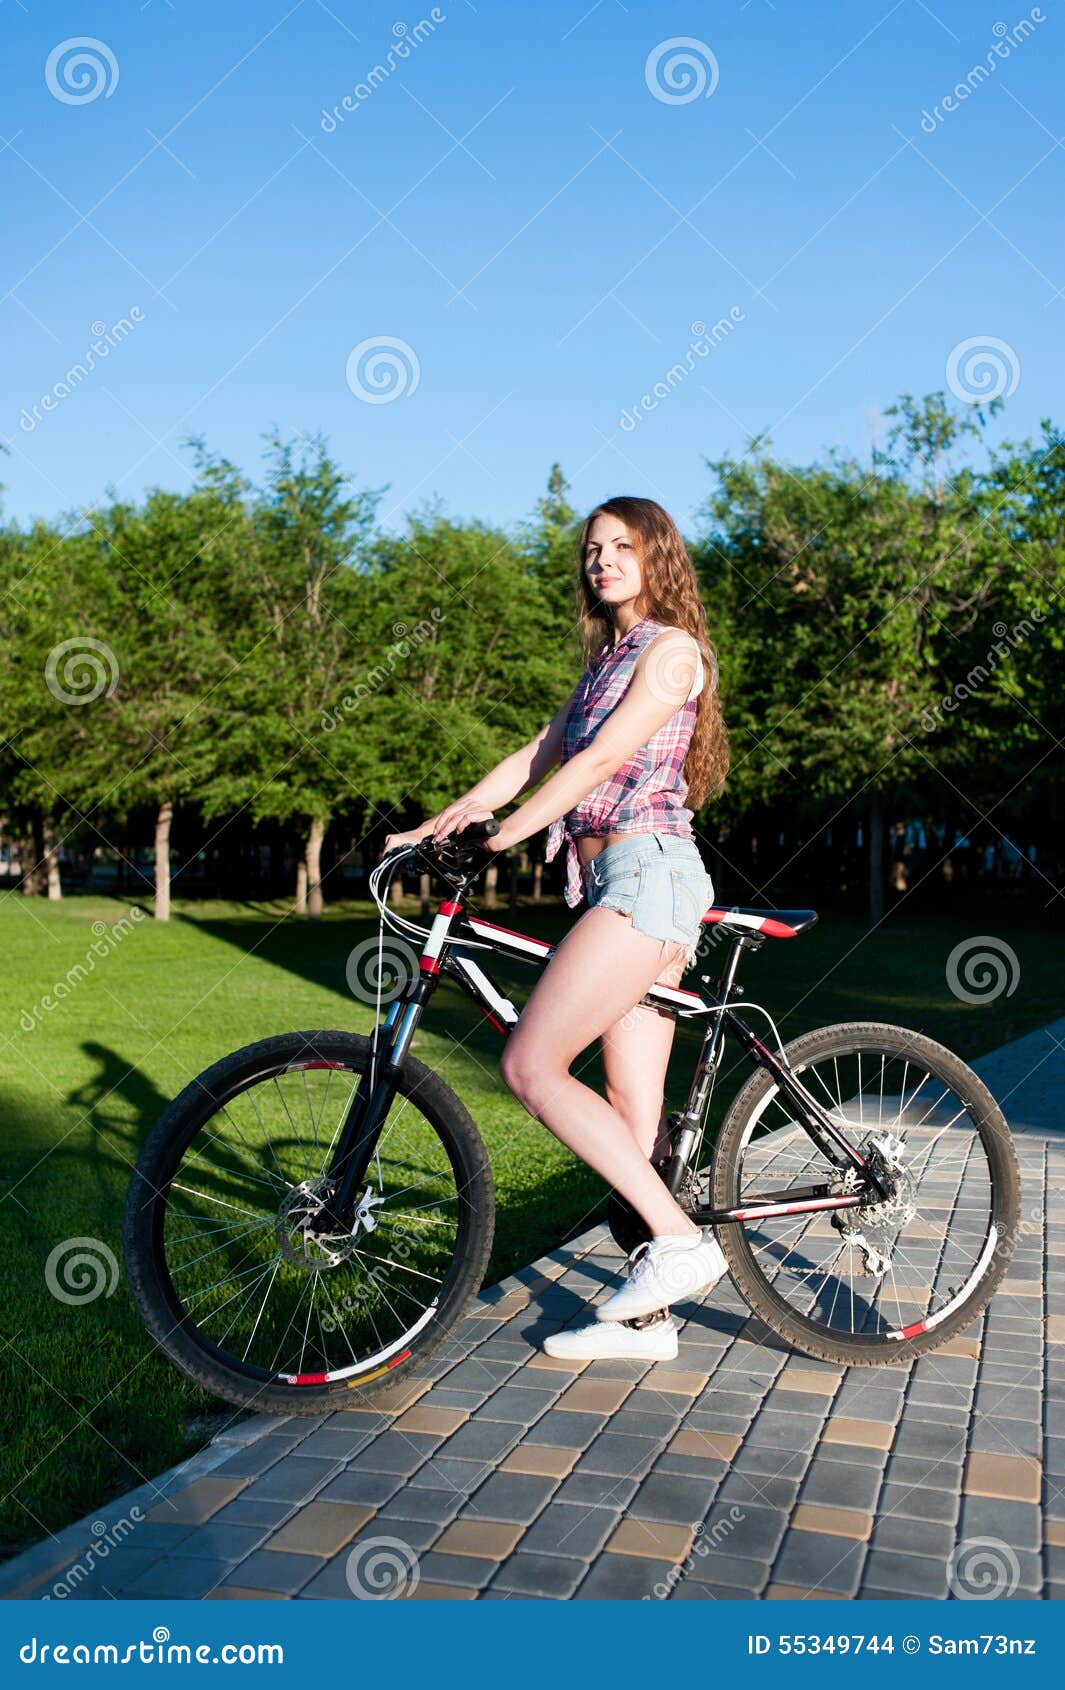 女孩坐自行车 库存照片. 图片 包括有 快乐, 骑自行车者, 休闲, 自行车骑士, 女演员, 衣物, 成人 - 55349716